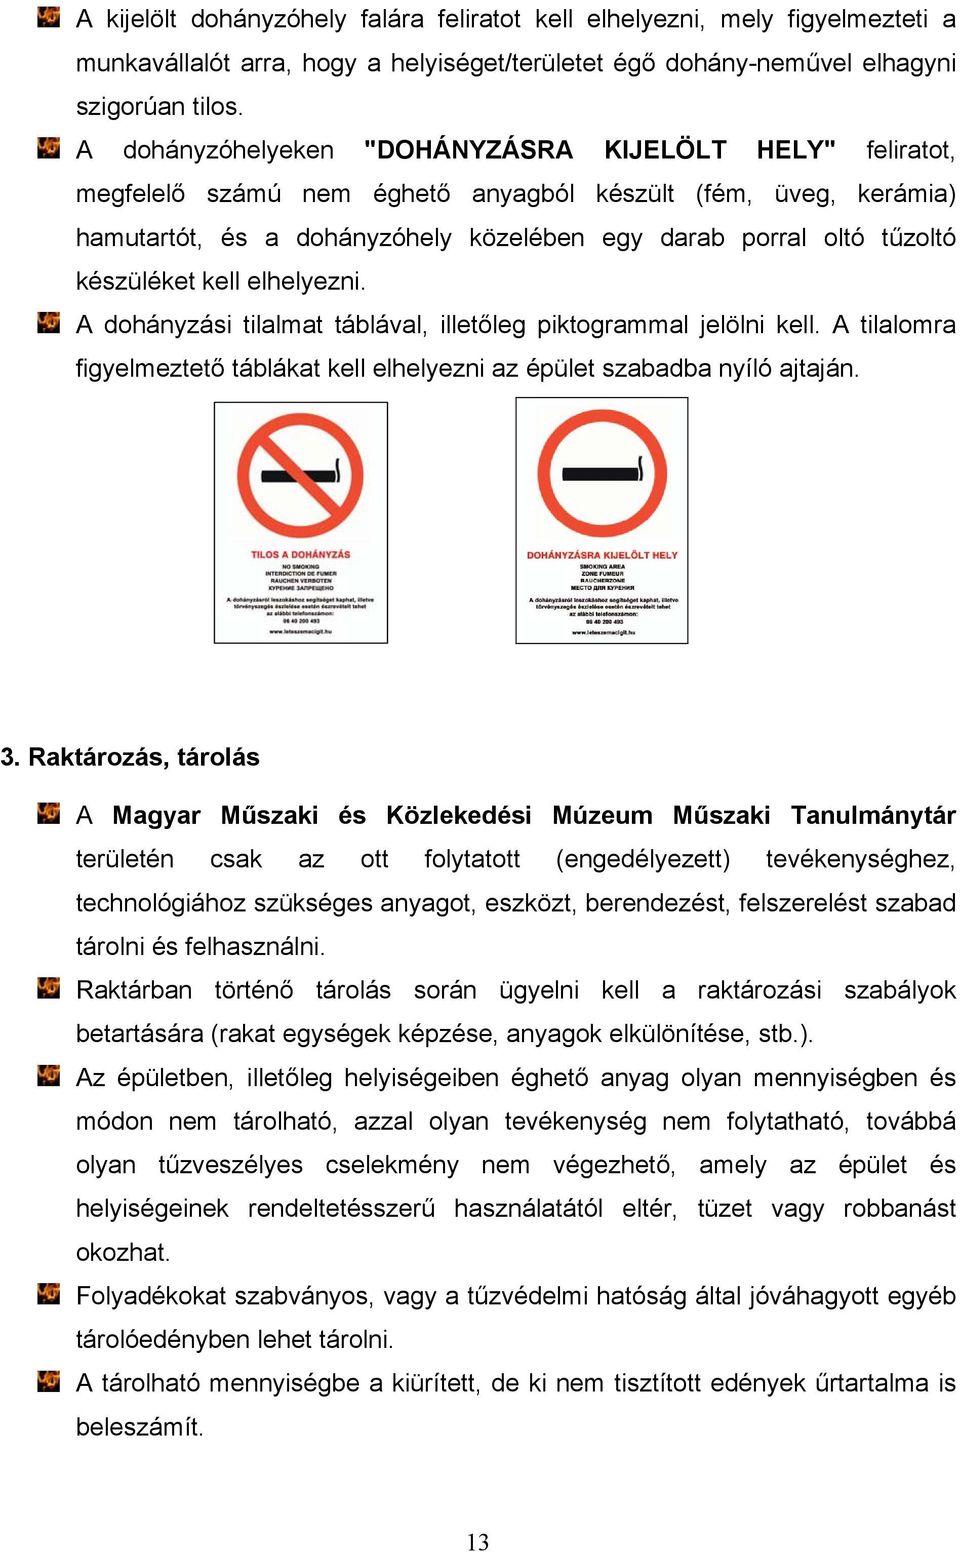 készüléket kell elhelyezni. A dohányzási tilalmat táblával, illetőleg piktogrammal jelölni kell. A tilalomra figyelmeztető táblákat kell elhelyezni az épület szabadba nyíló ajtaján. 3.